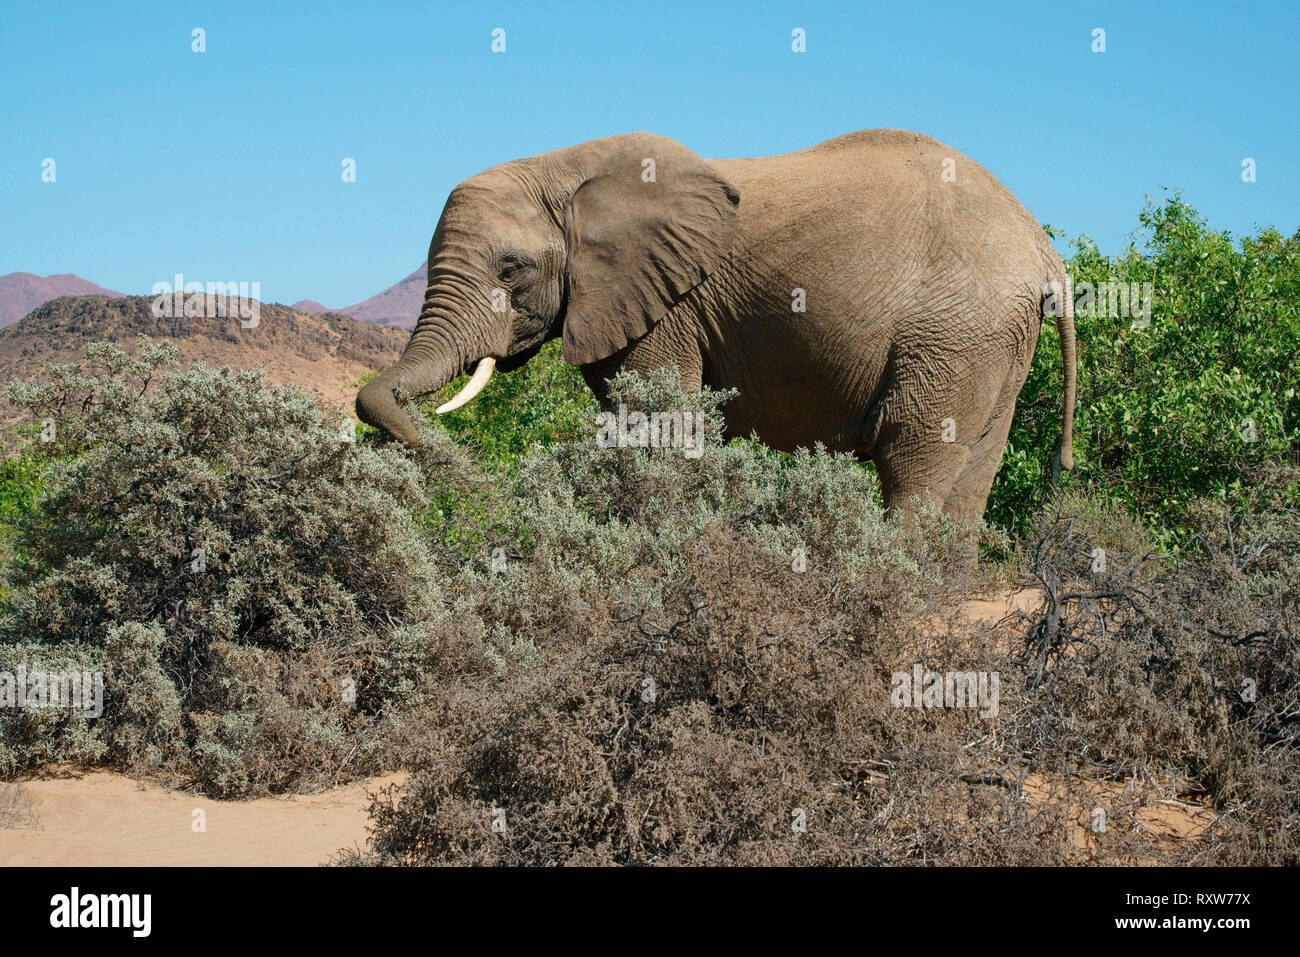 Desert-adapté elephant (Loxodonta africana) est une brousse africaine éléphant avec des adaptations spéciales pour survivre dans les déserts de l'Afrique. Ils ont des jambes plus petites,taille et un plus grand encombrement que les autres éléphants de Bush. Près de Mowani Lodge dans le désert du Namib de nord-ouest de la Namibie, l'Afrique Banque D'Images